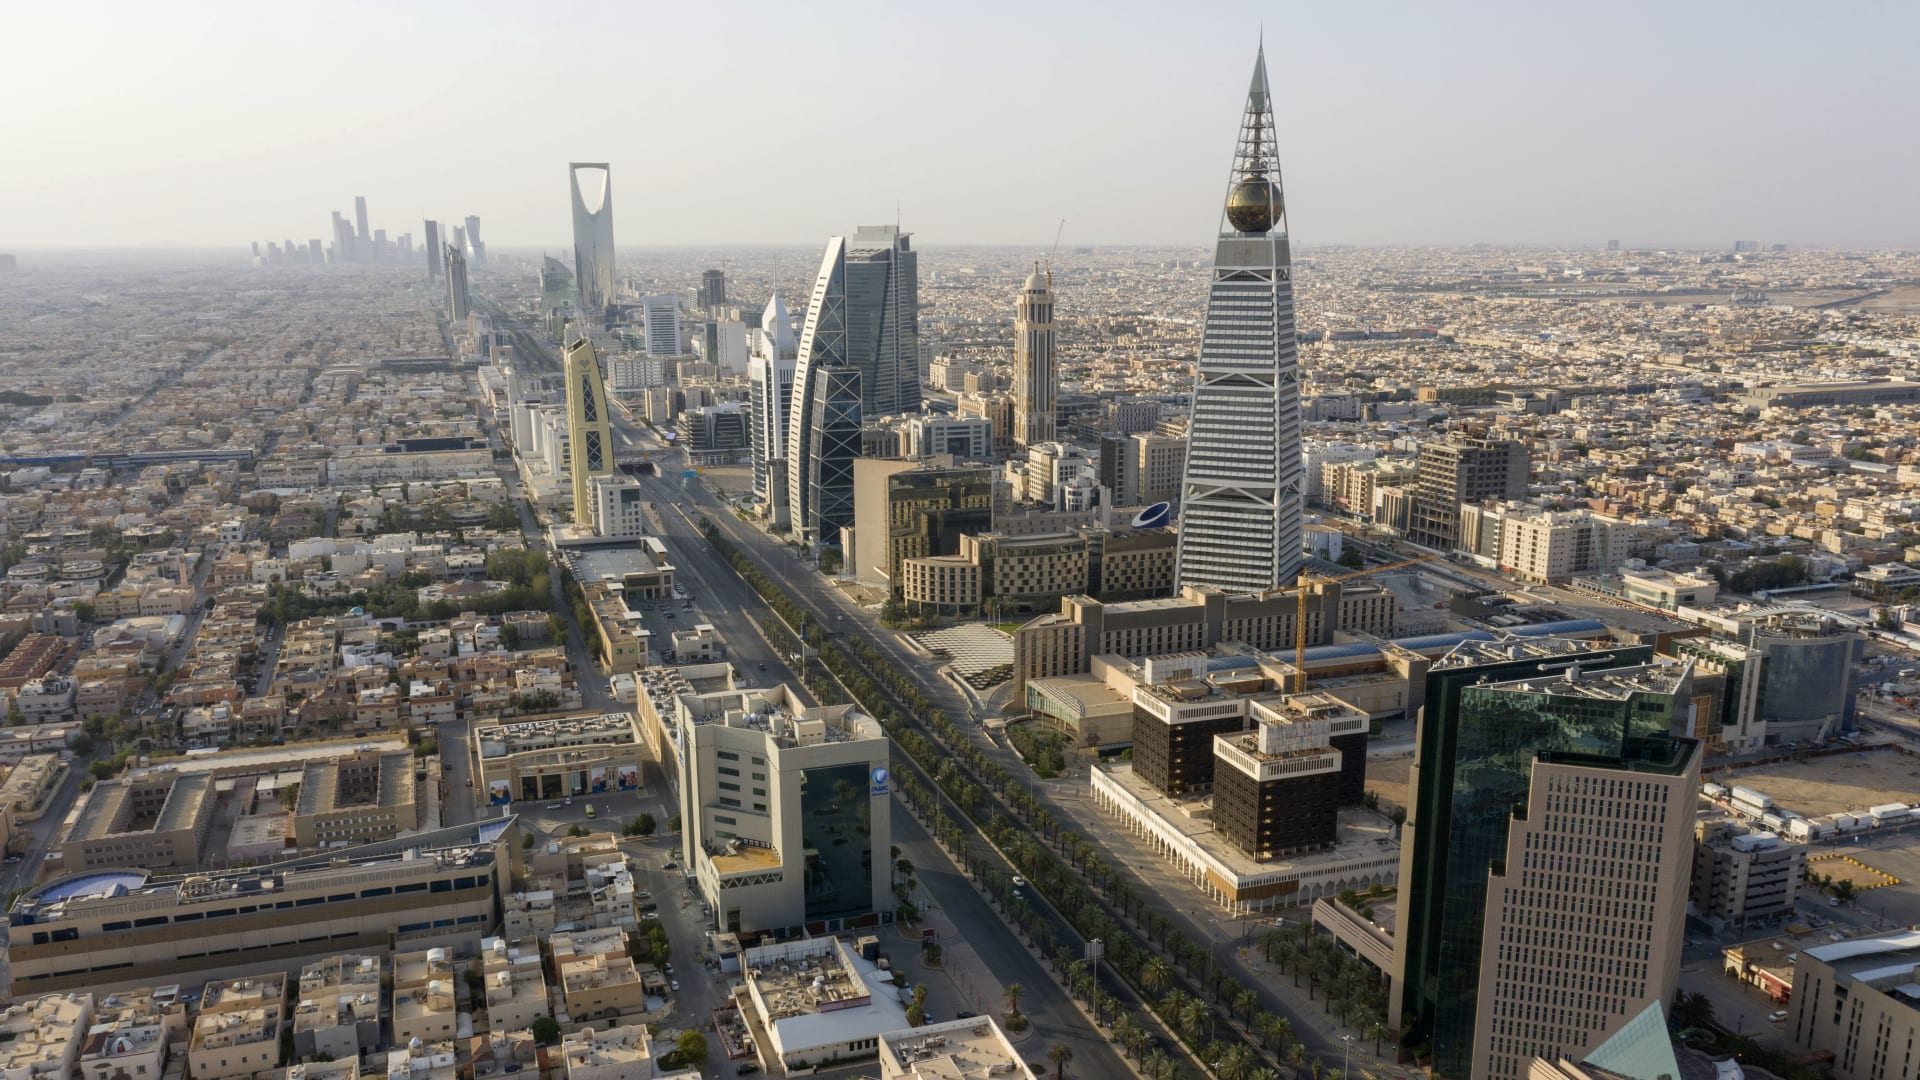 بعد قرار المملكة.. مراسل CNN يقارن بين حوافز السعودية والإمارات للشركات الأجنبية